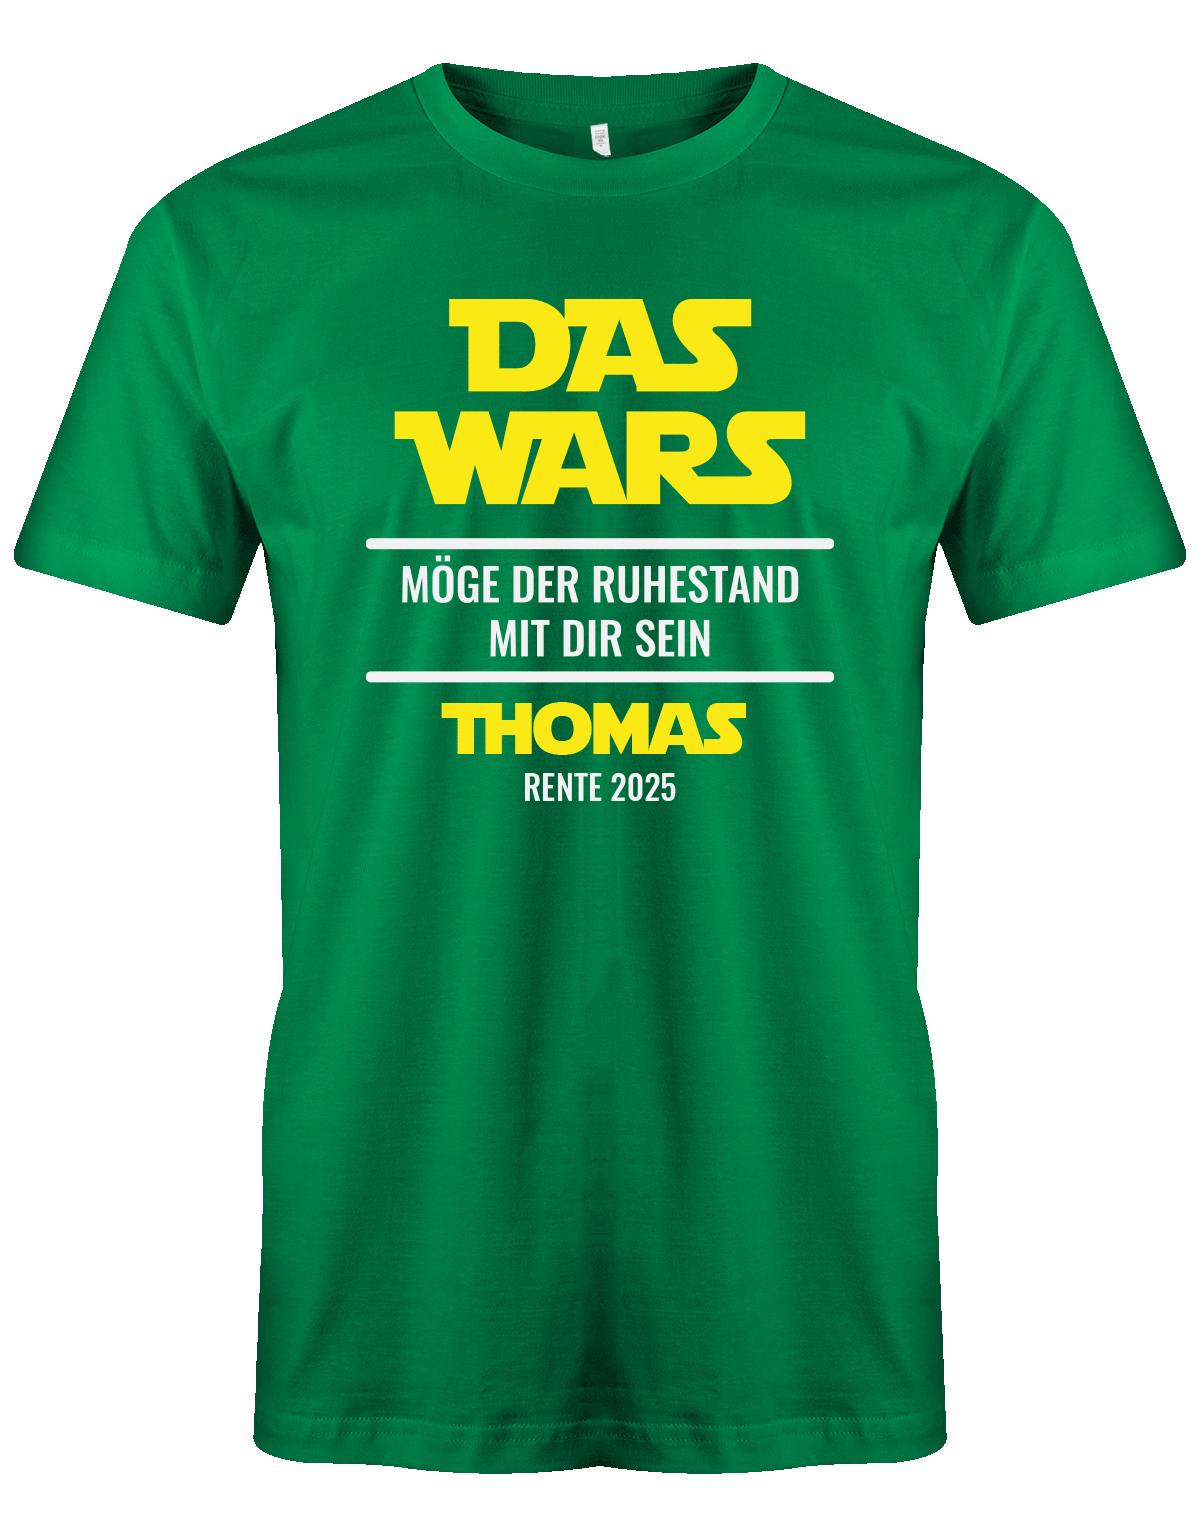 das-wars-moege-der-ruhestand-mit-dir-sein-rente-2025-gruen-tshirt-shirt-T-shirt